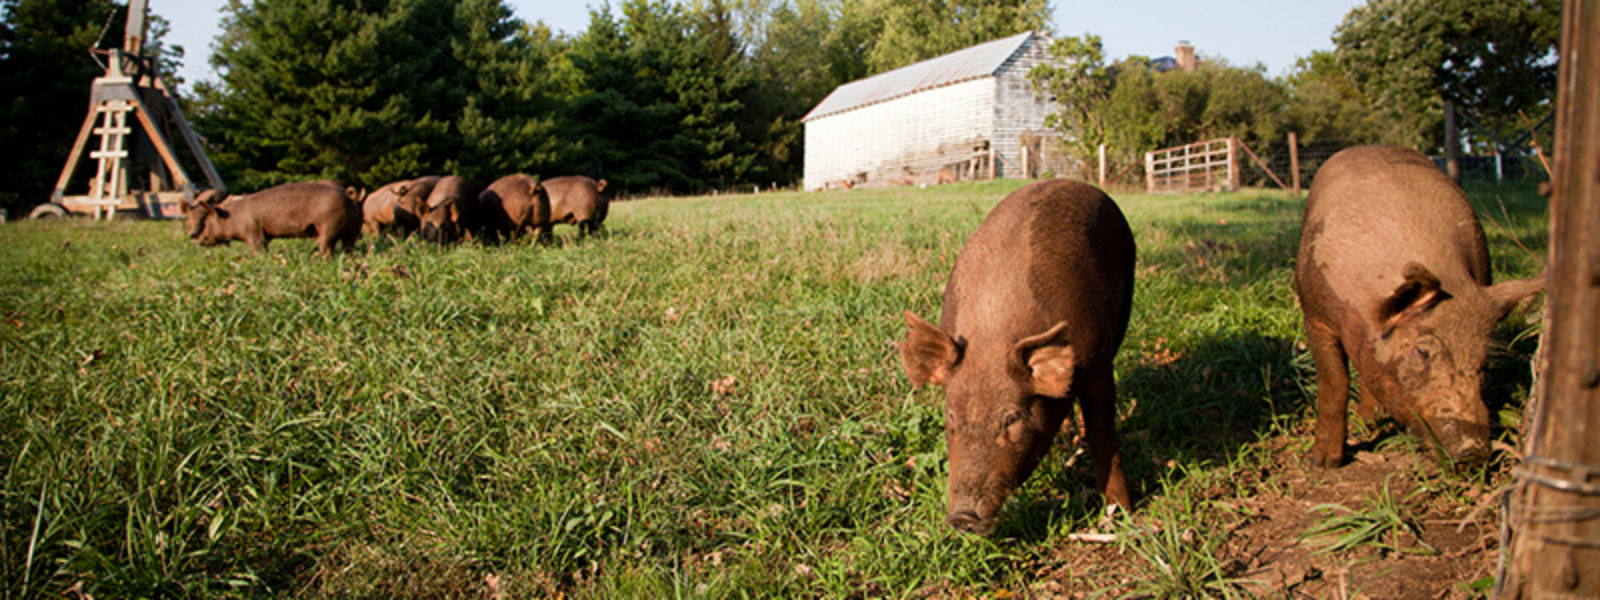 Hogs grazing in a field